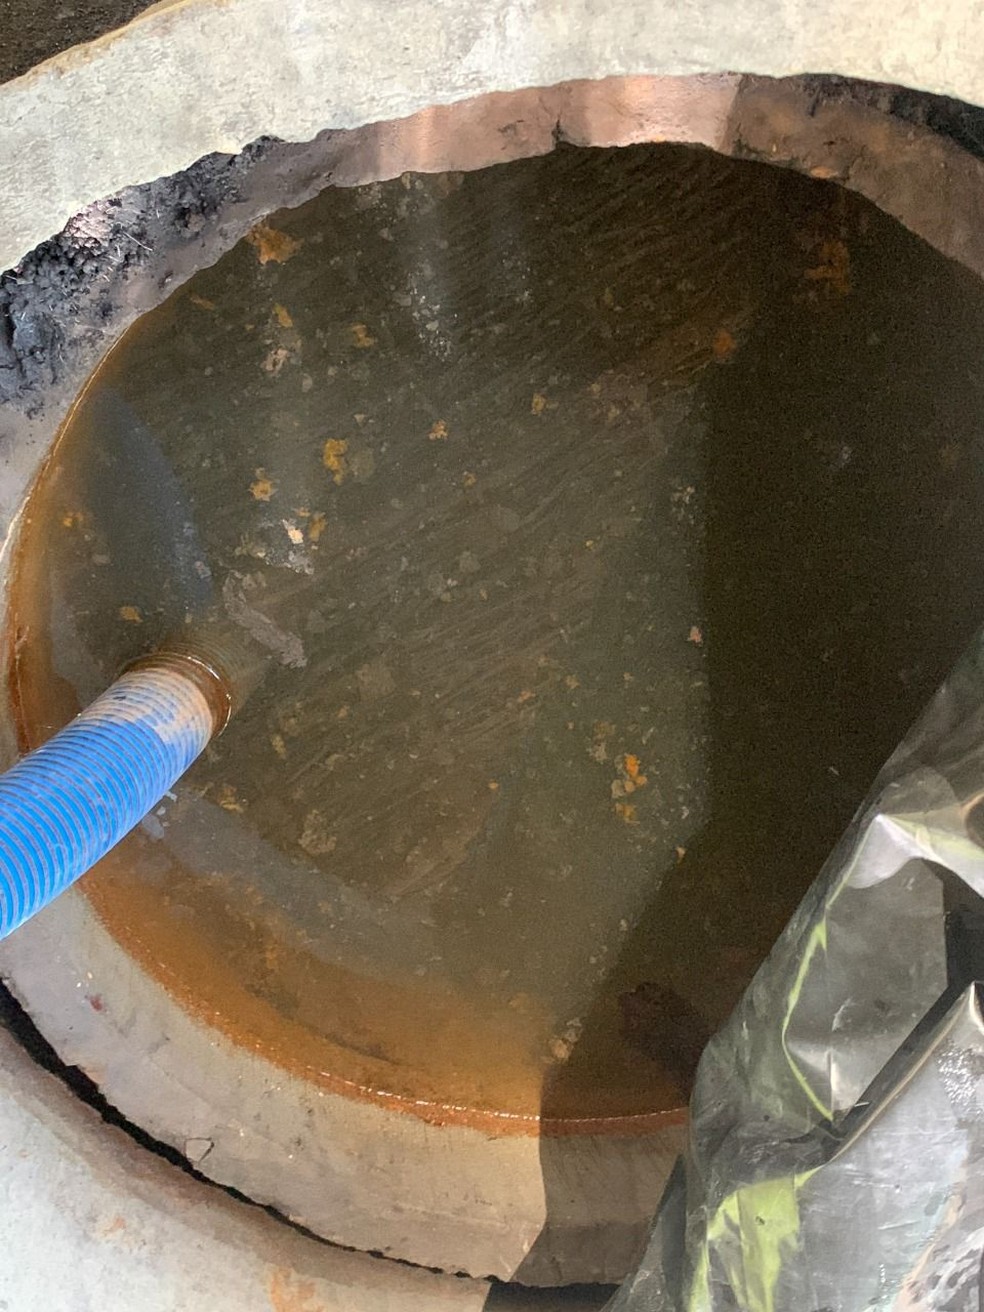 Trabalhadores tomavam água em poço sujo e com cor amarelada — Foto: Divulgação/MPT-MA